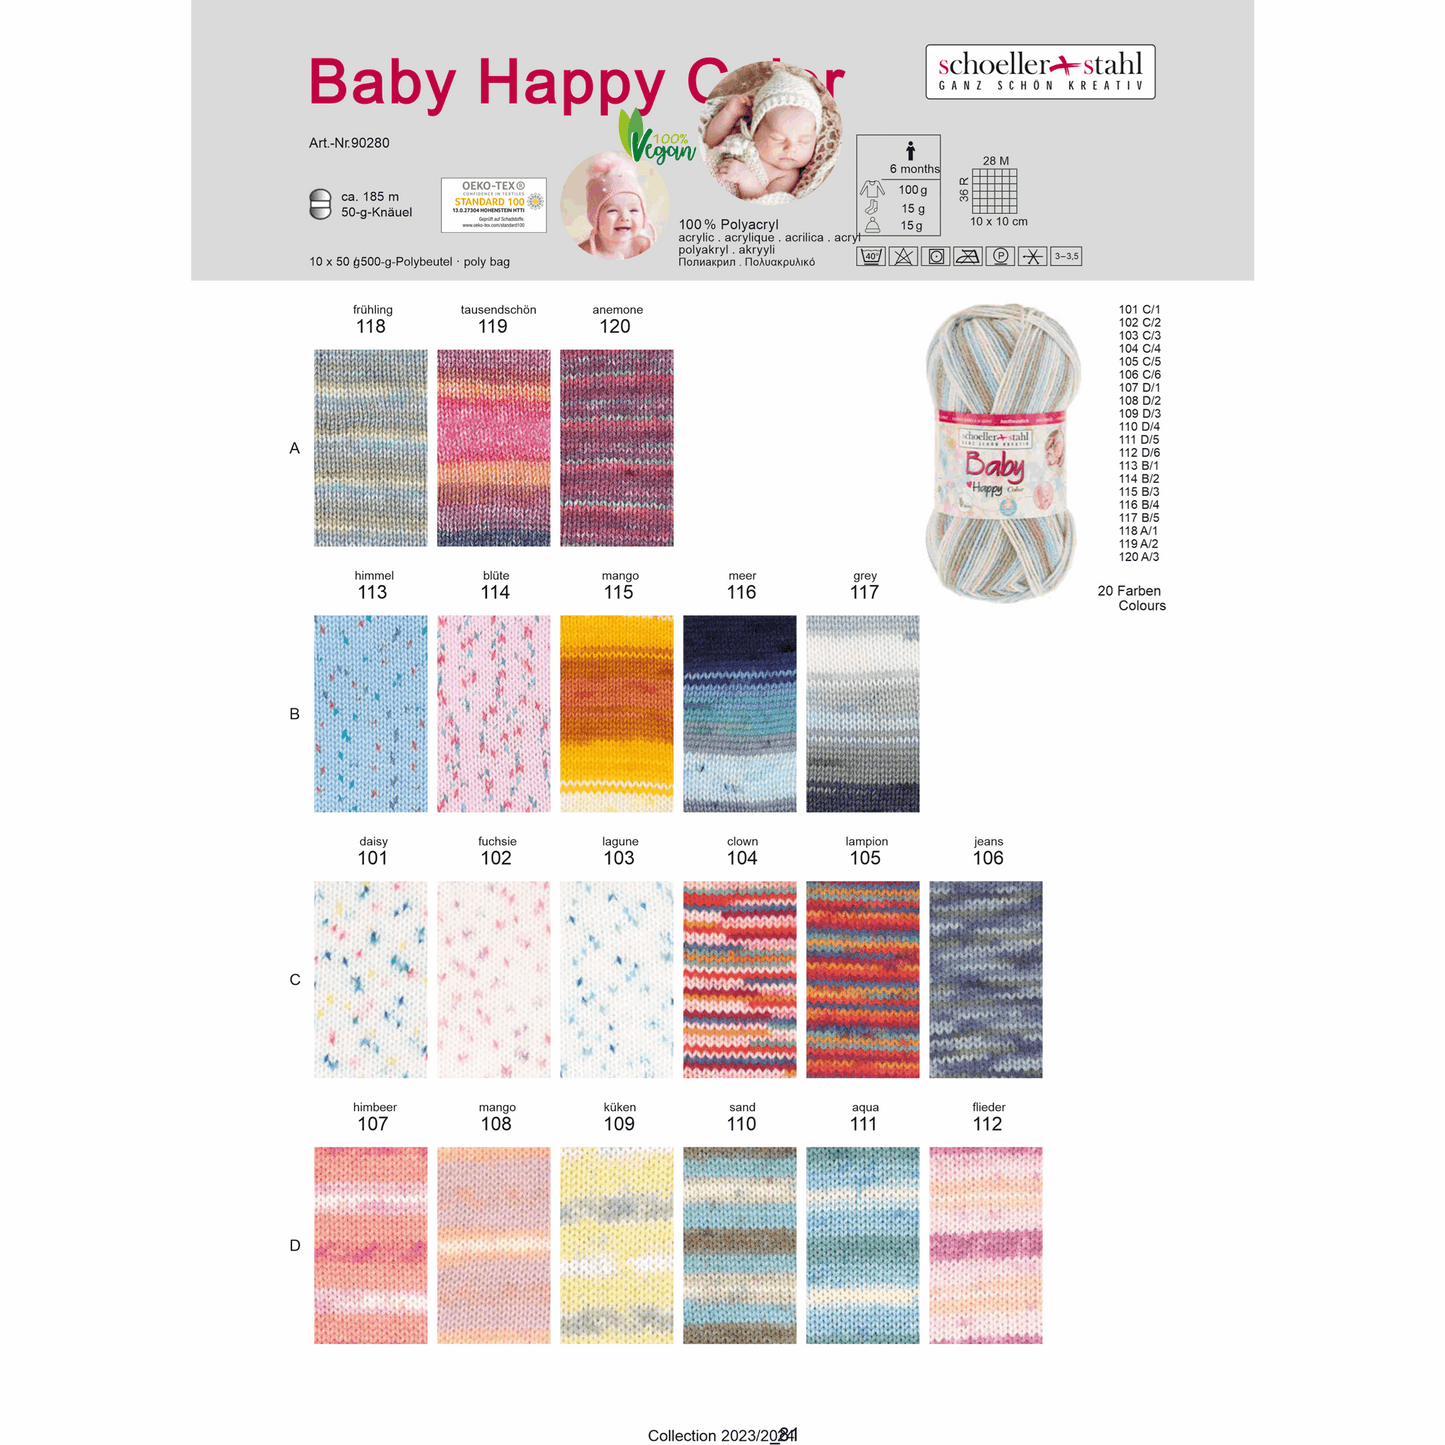 Baby happy color 50g, 90280, Farbe 119, tausendschön